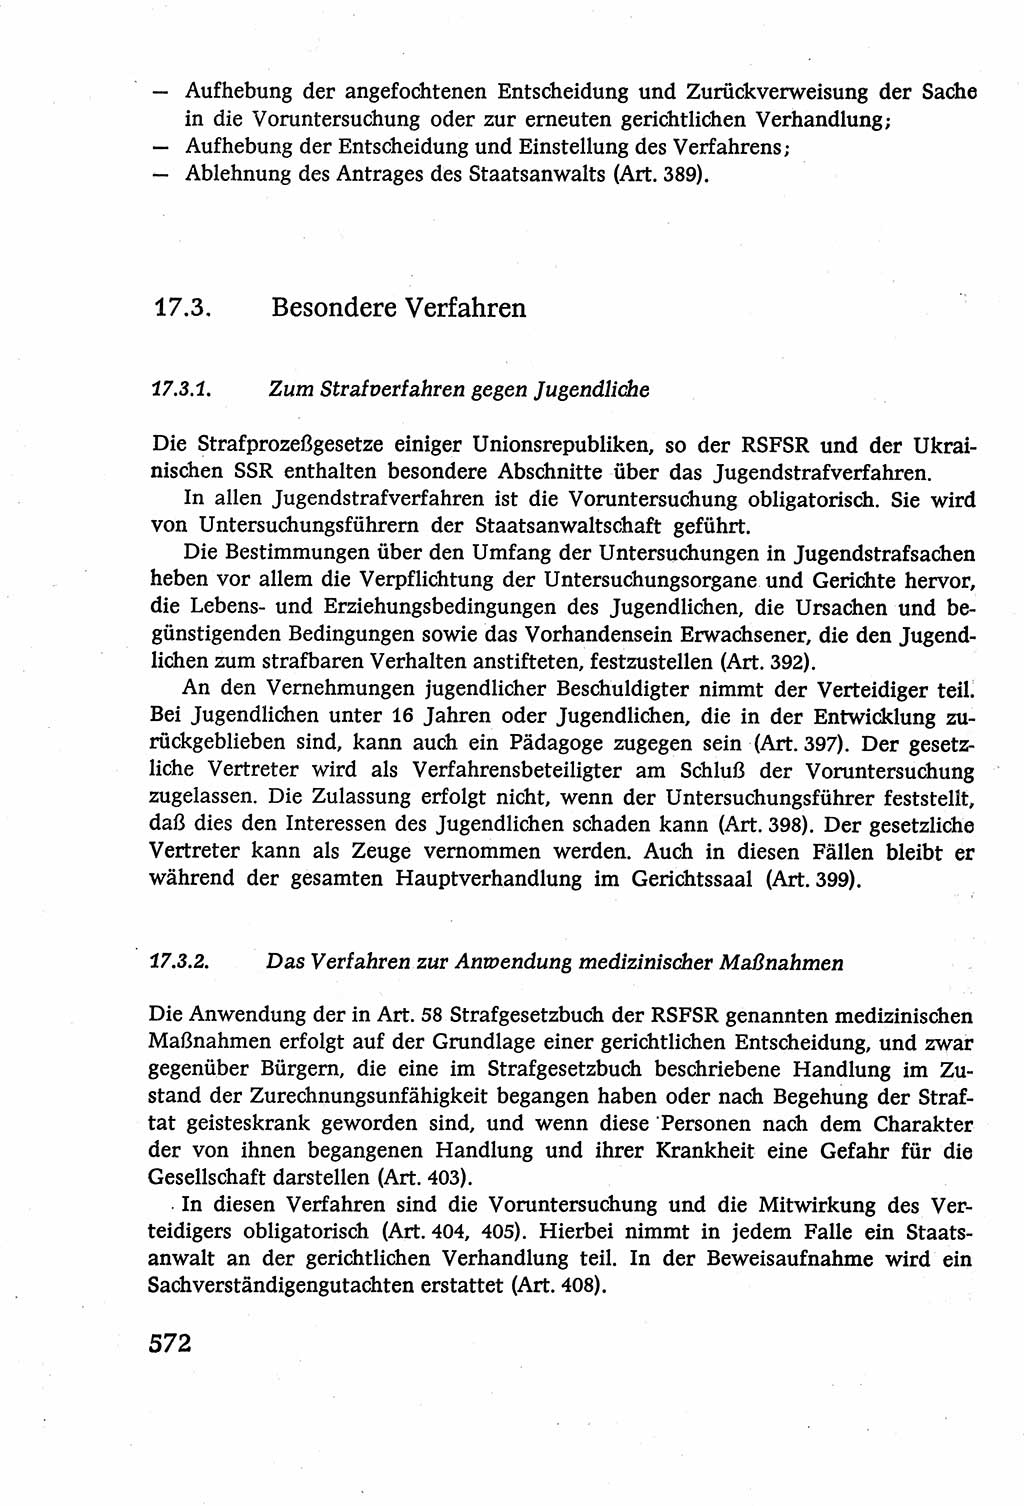 Strafverfahrensrecht [Deutsche Demokratische Republik (DDR)], Lehrbuch 1977, Seite 572 (Strafverf.-R. DDR Lb. 1977, S. 572)